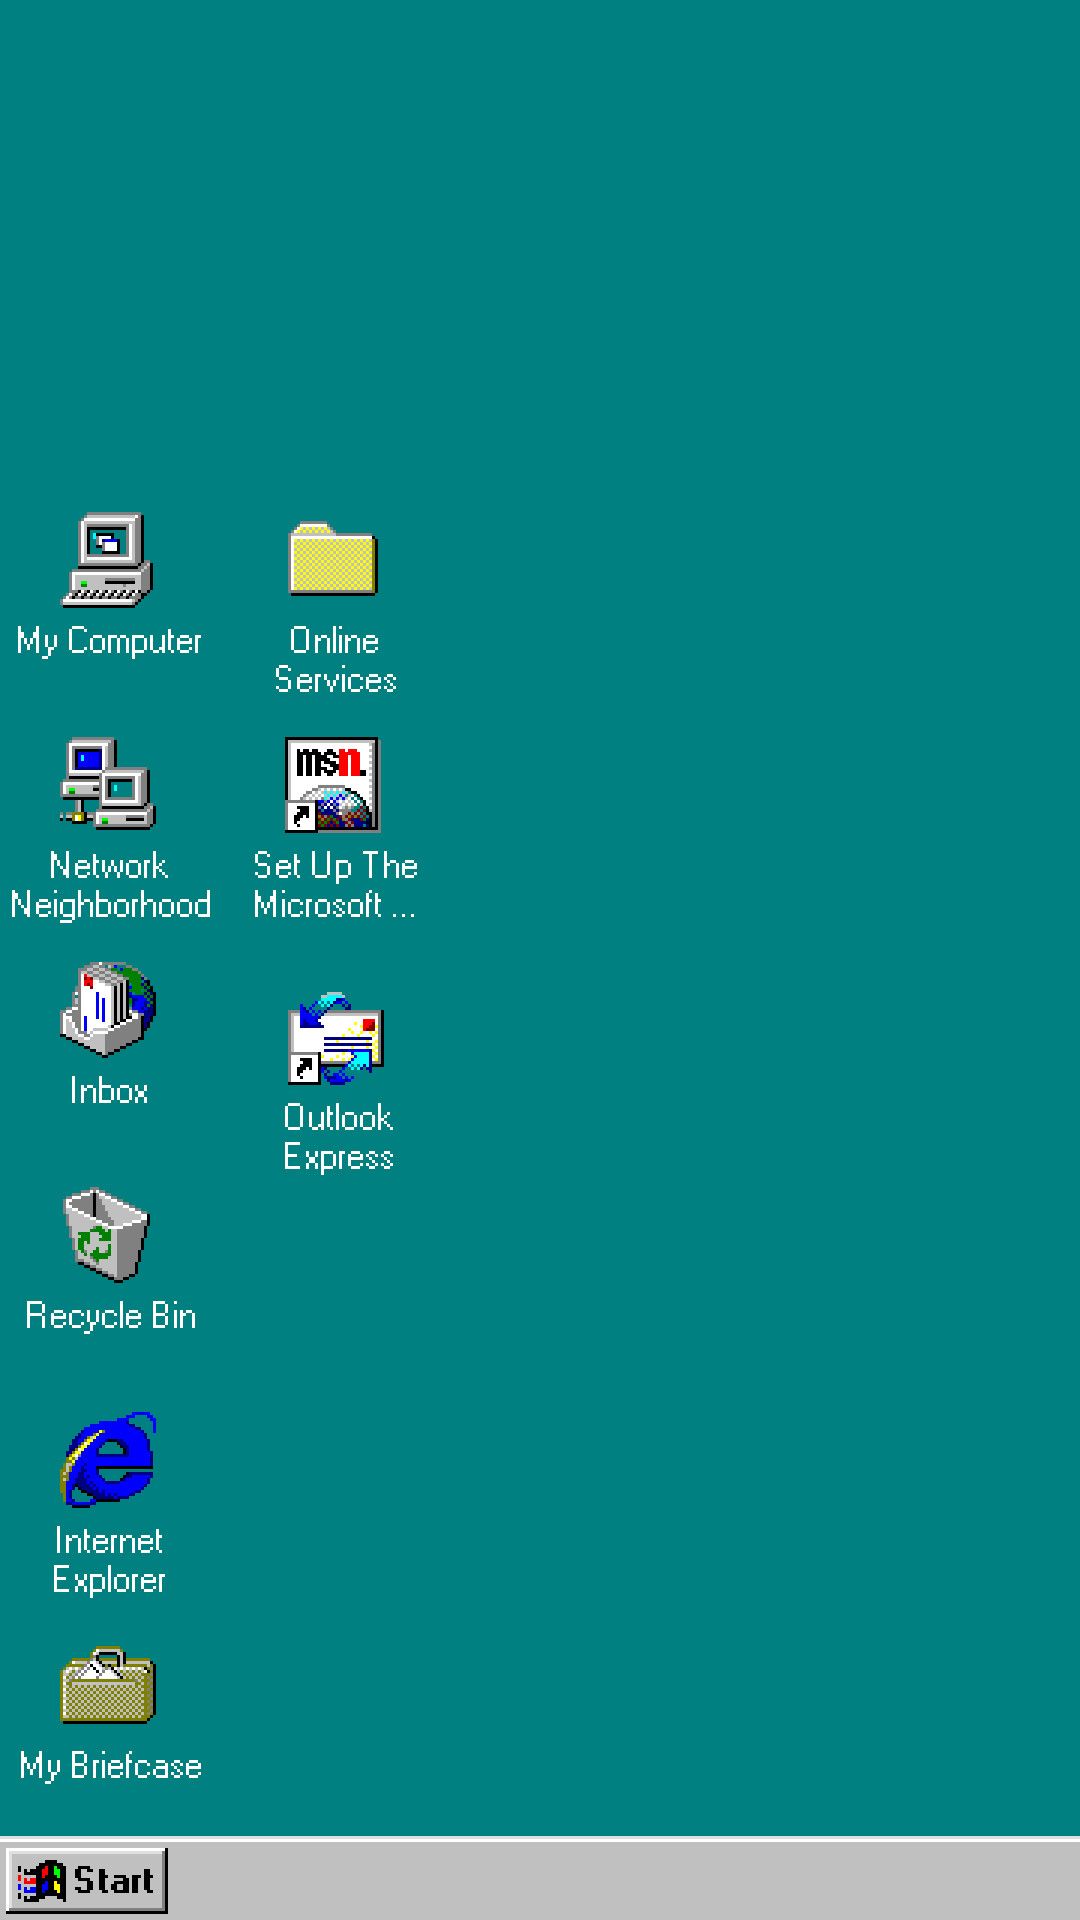 Là một người yêu cũ của Windows 98, bạn chắc chắn sẽ không muốn bỏ qua bộ sưu tập hình nền đặc biệt này! Với nhiều màu sắc và hình ảnh độc đáo, hình nền Windows 98 sẽ đưa bạn trở lại kỷ niệm tuổi thơ thật đẹp.